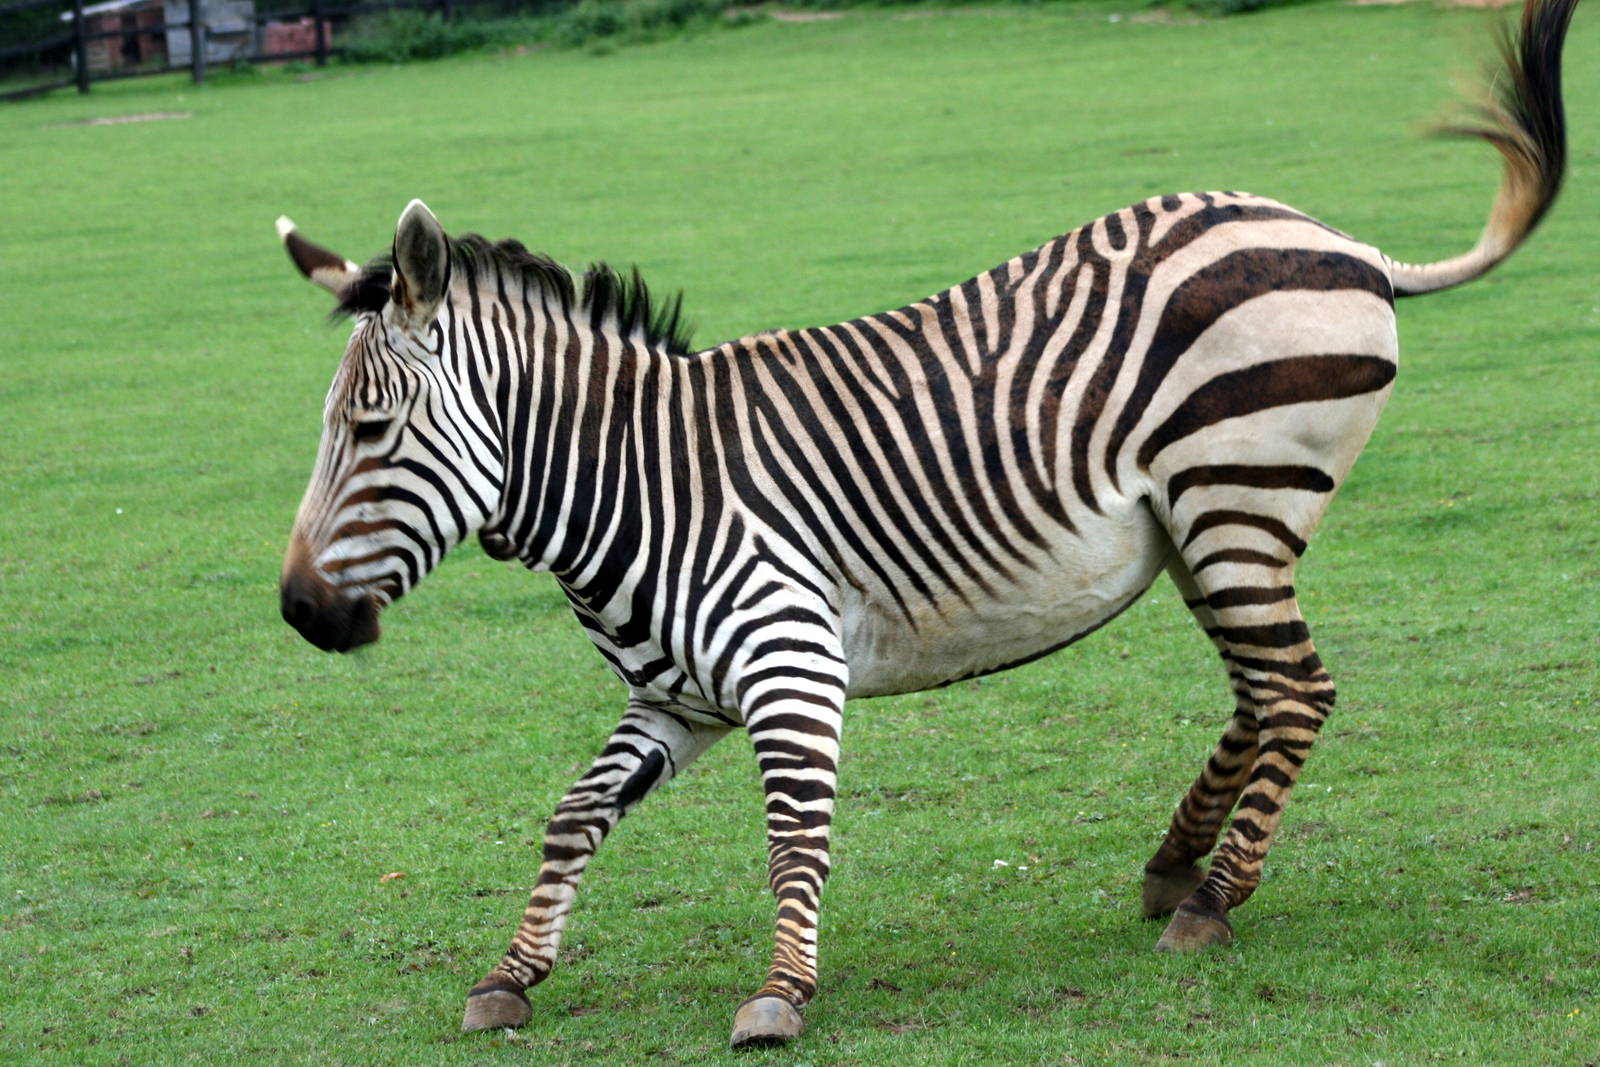 Zebra in a photo